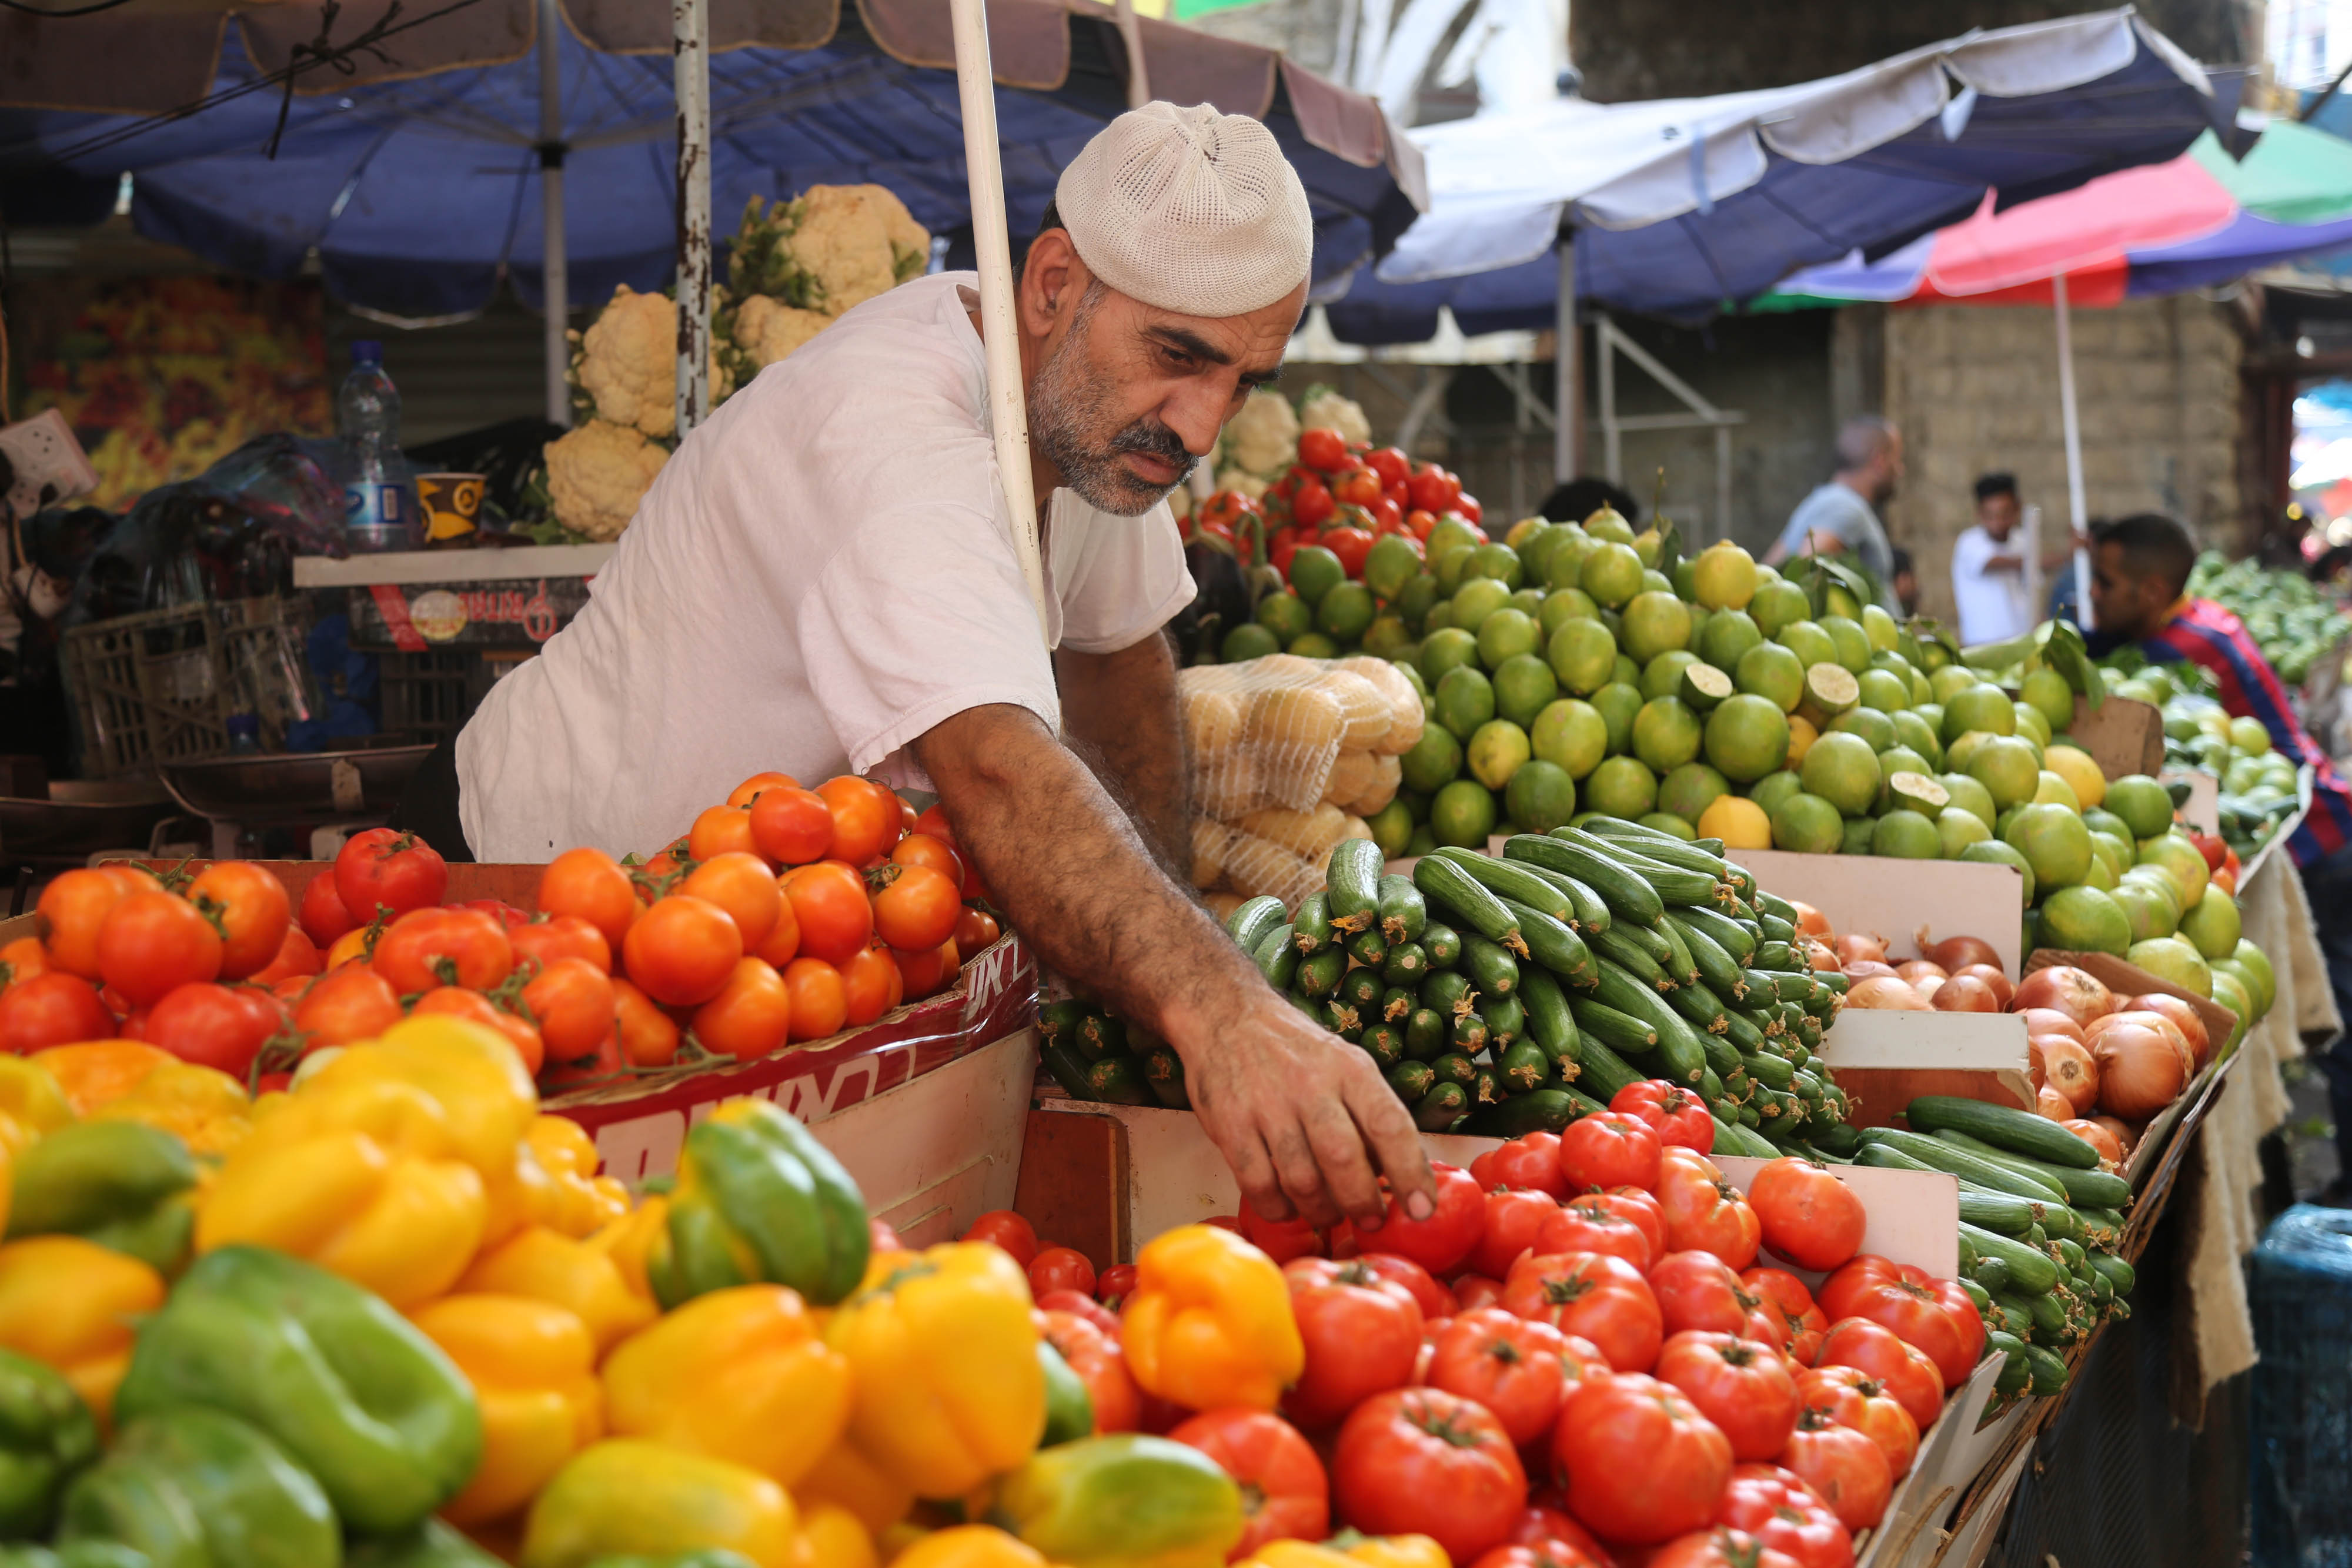 الإحصاء الفلسطيني: انخفاض في أسعار المنتج خلال شهر آذار